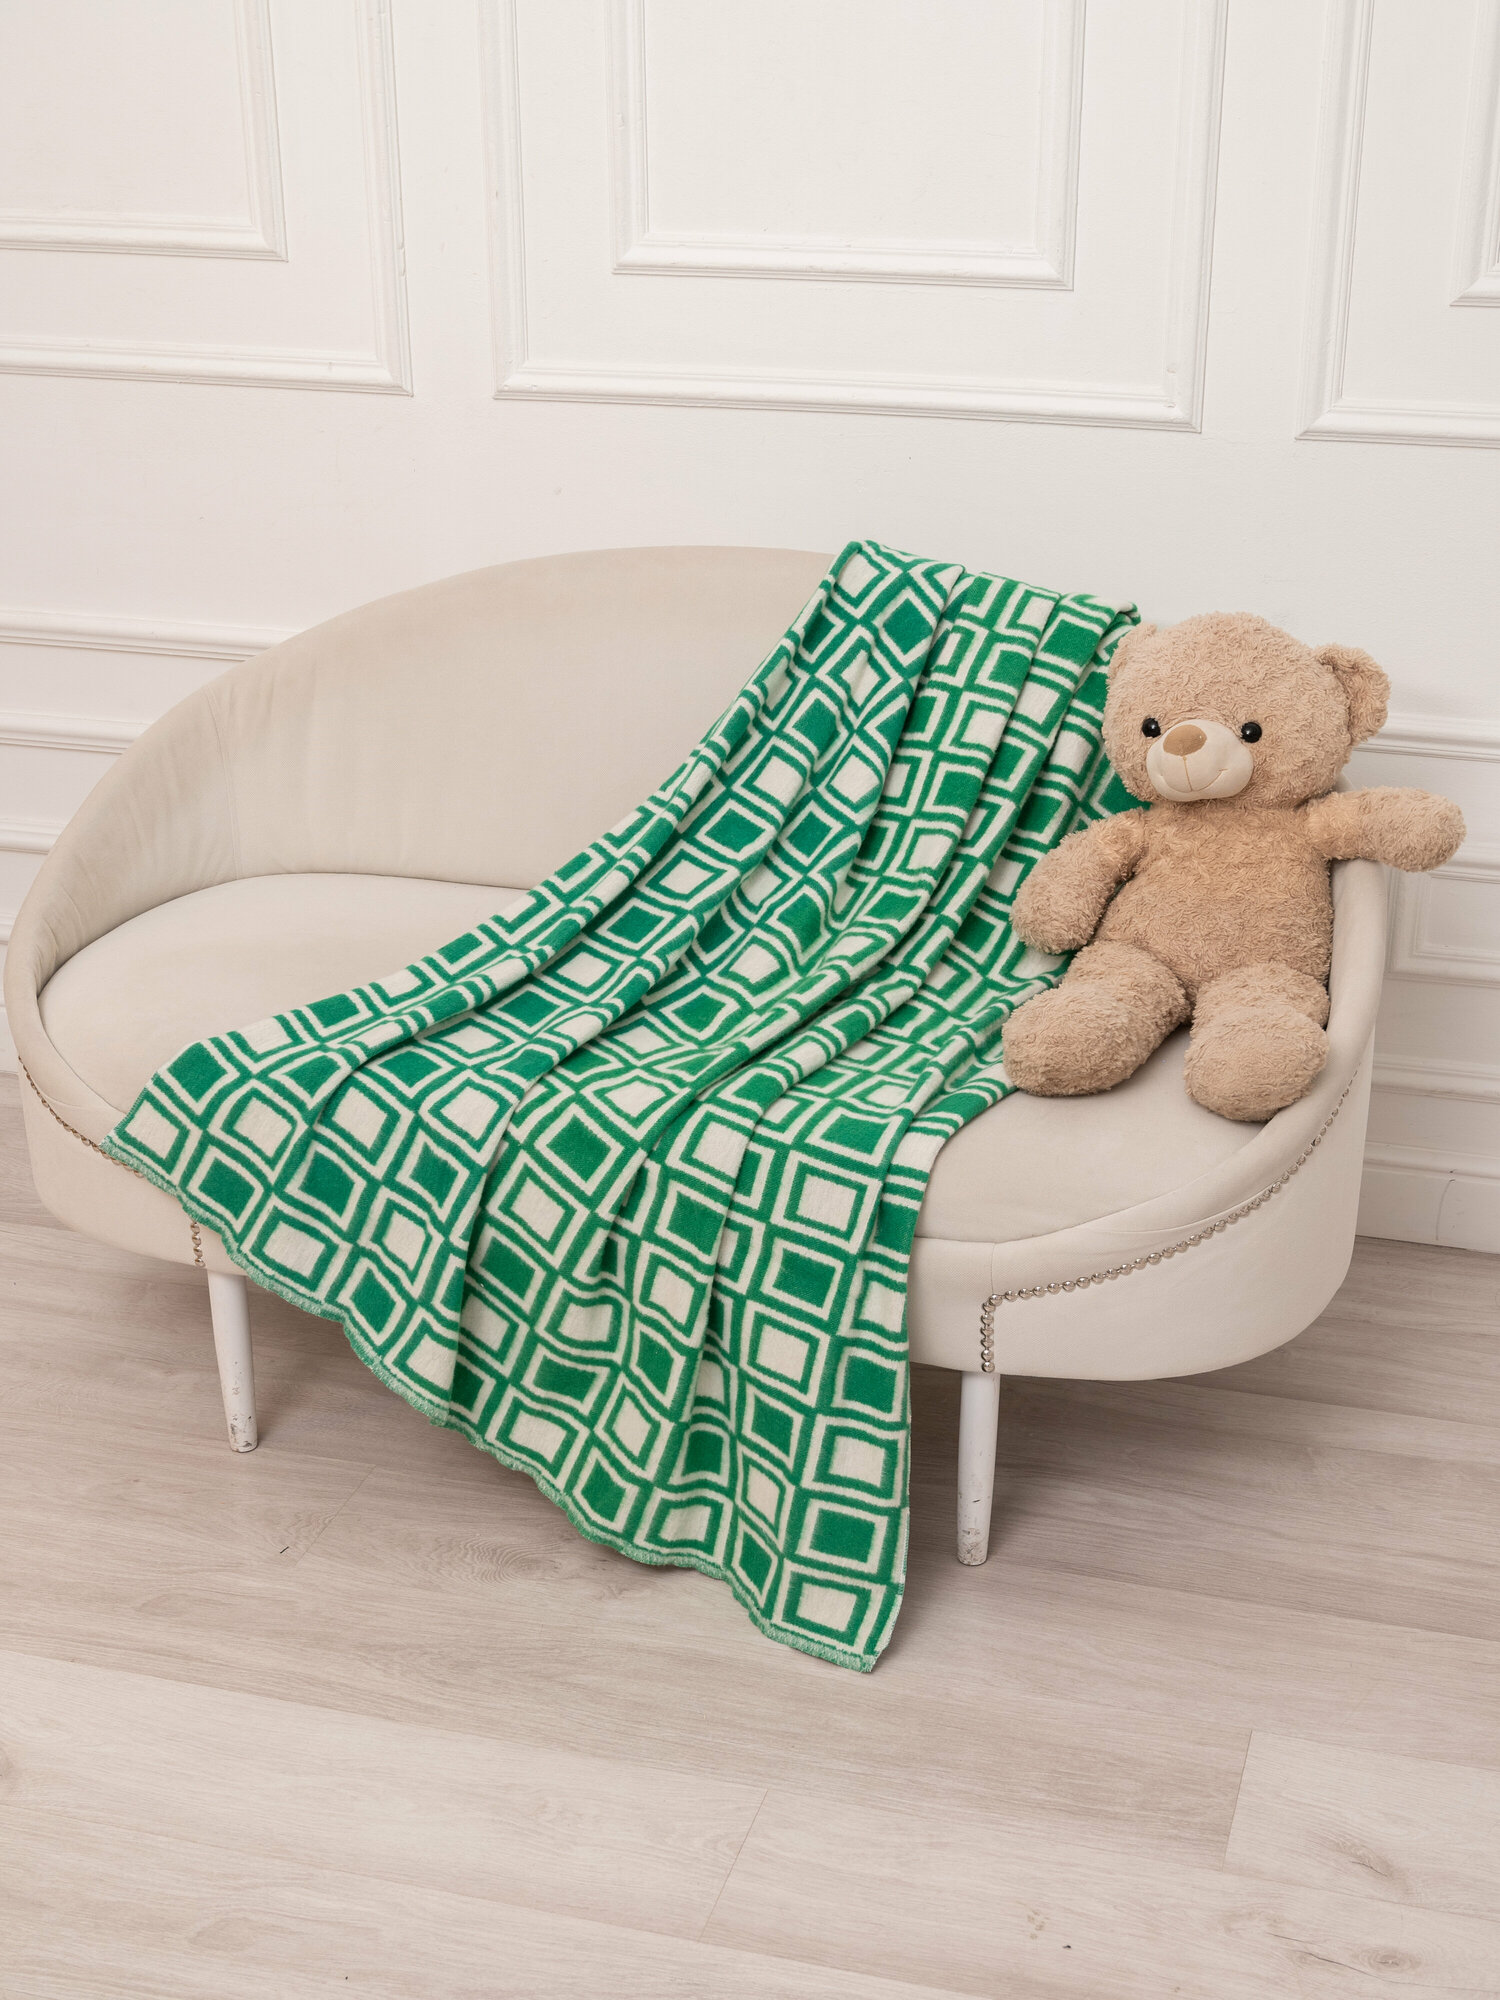 Одеяло байковое Детское ясельное (100*140см), зеленое, клетка